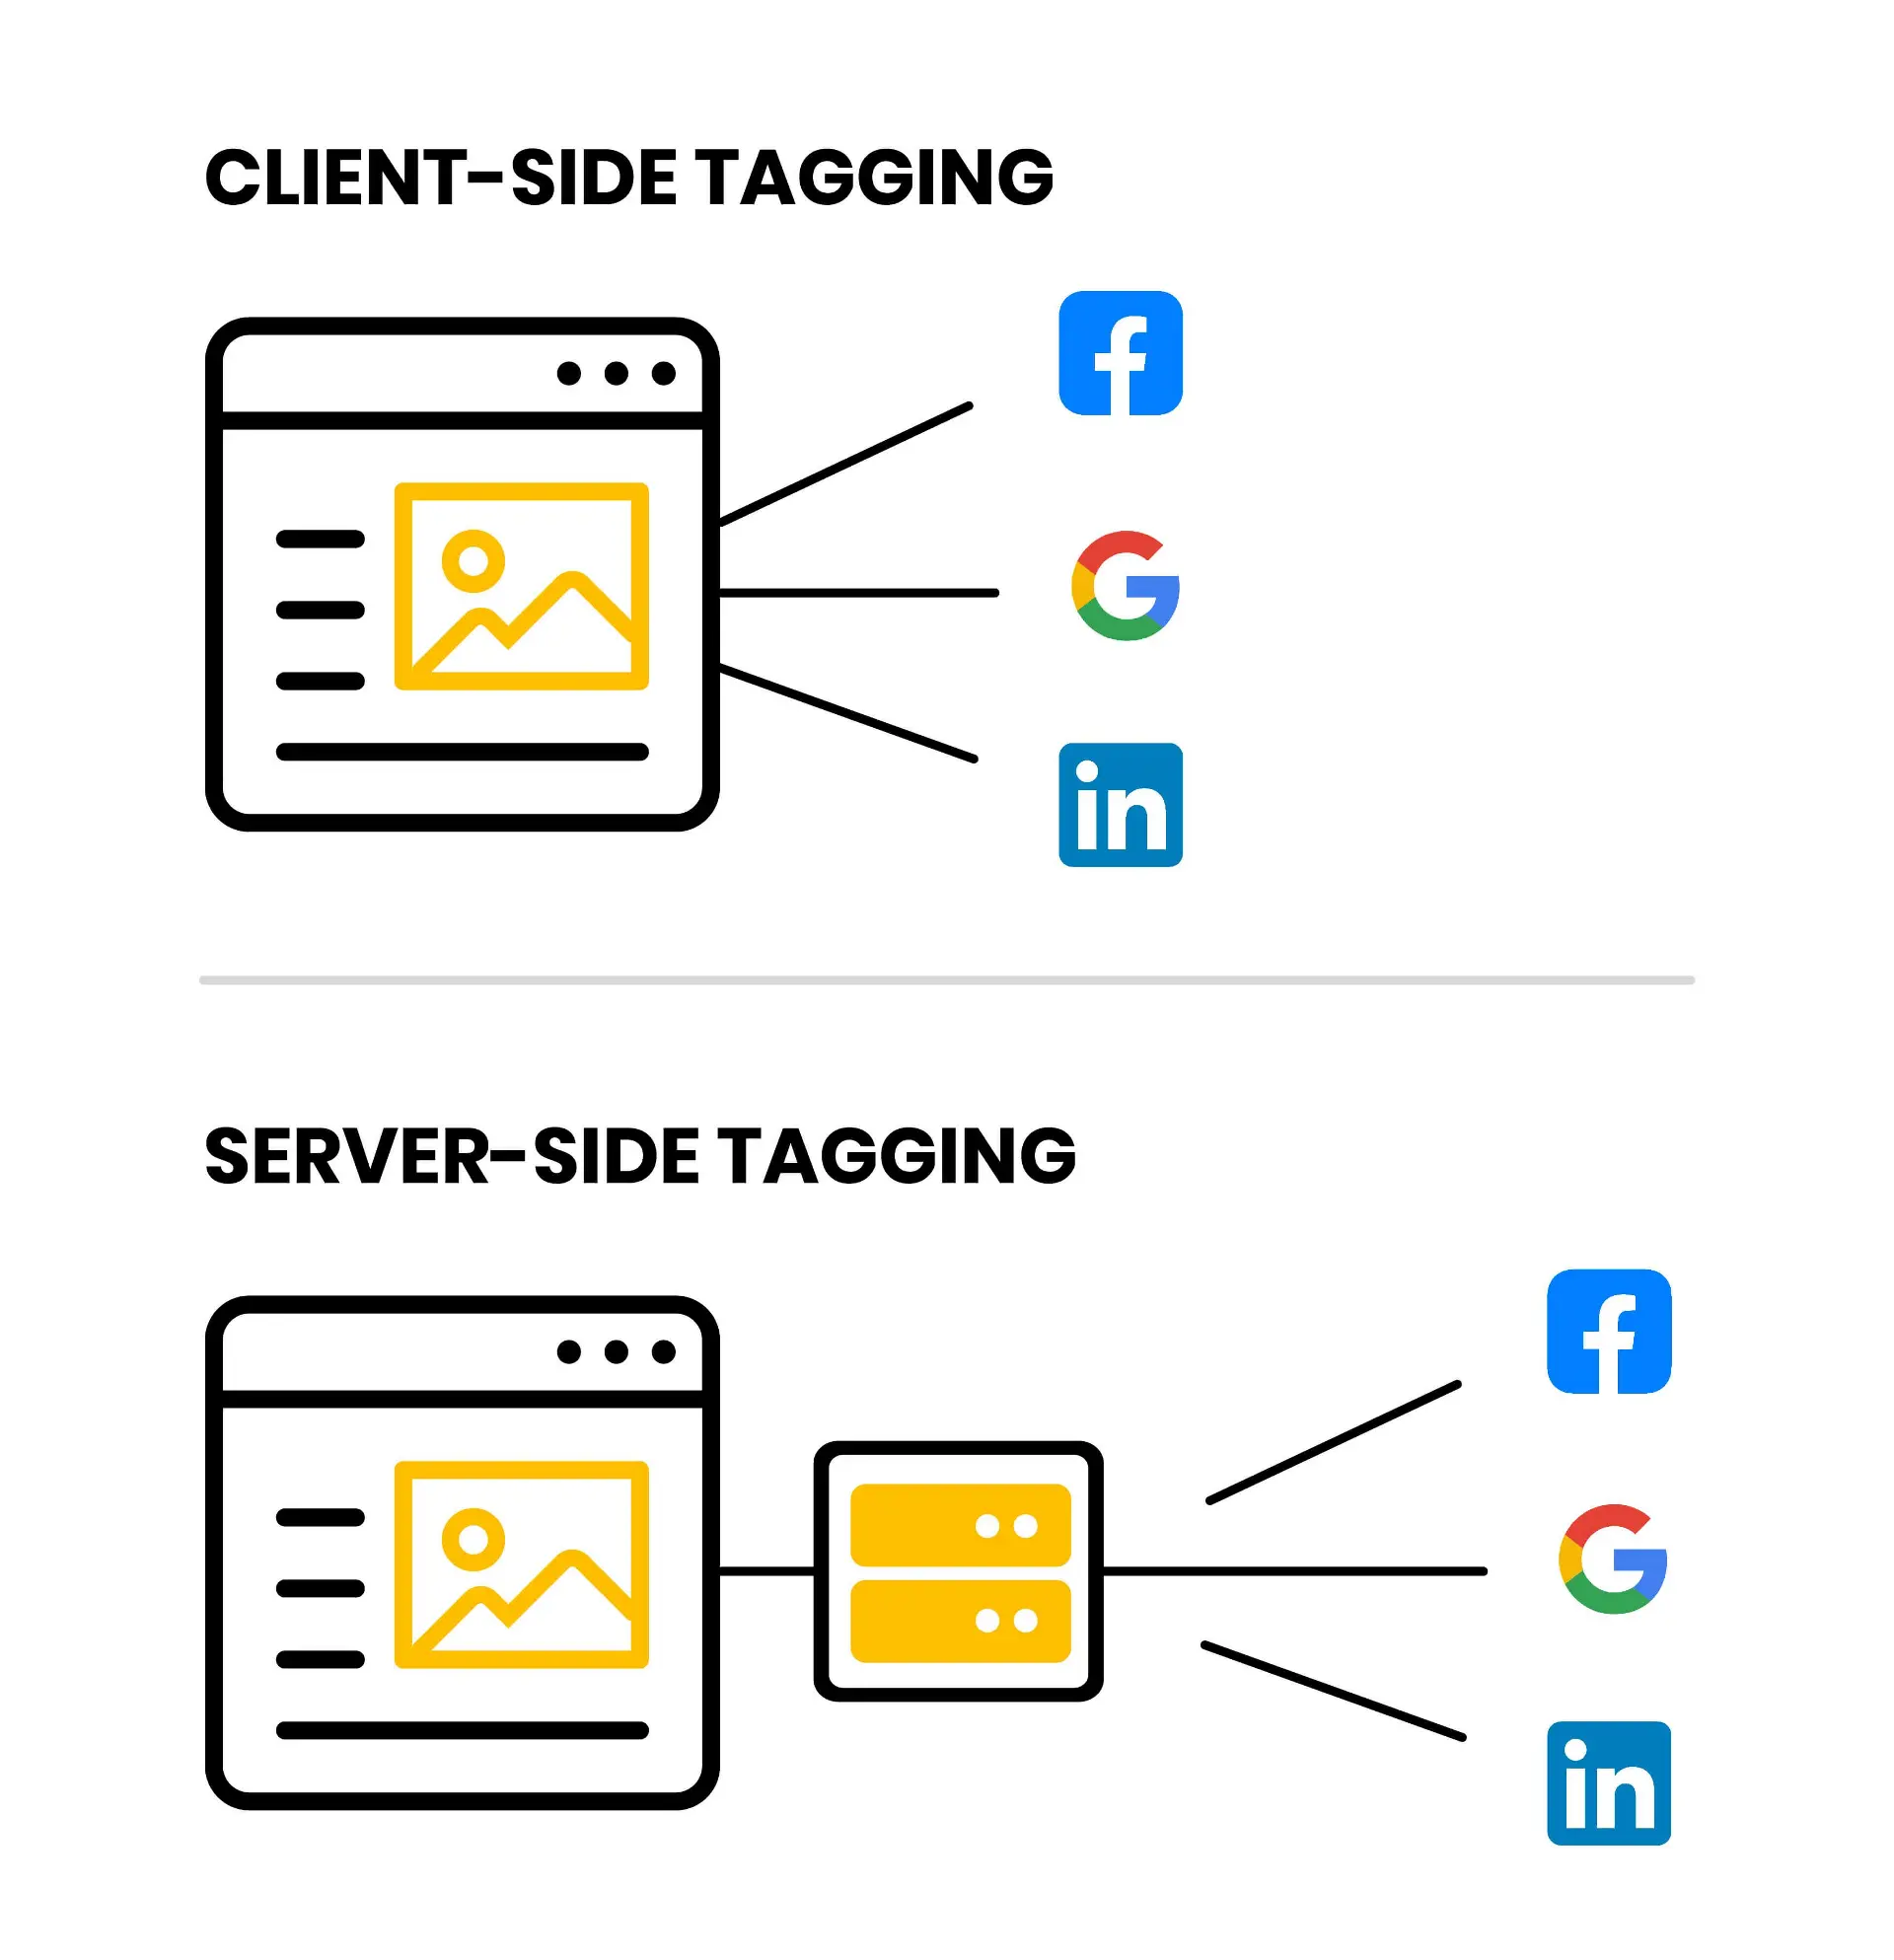 Client-side tagging vs server-side tagging